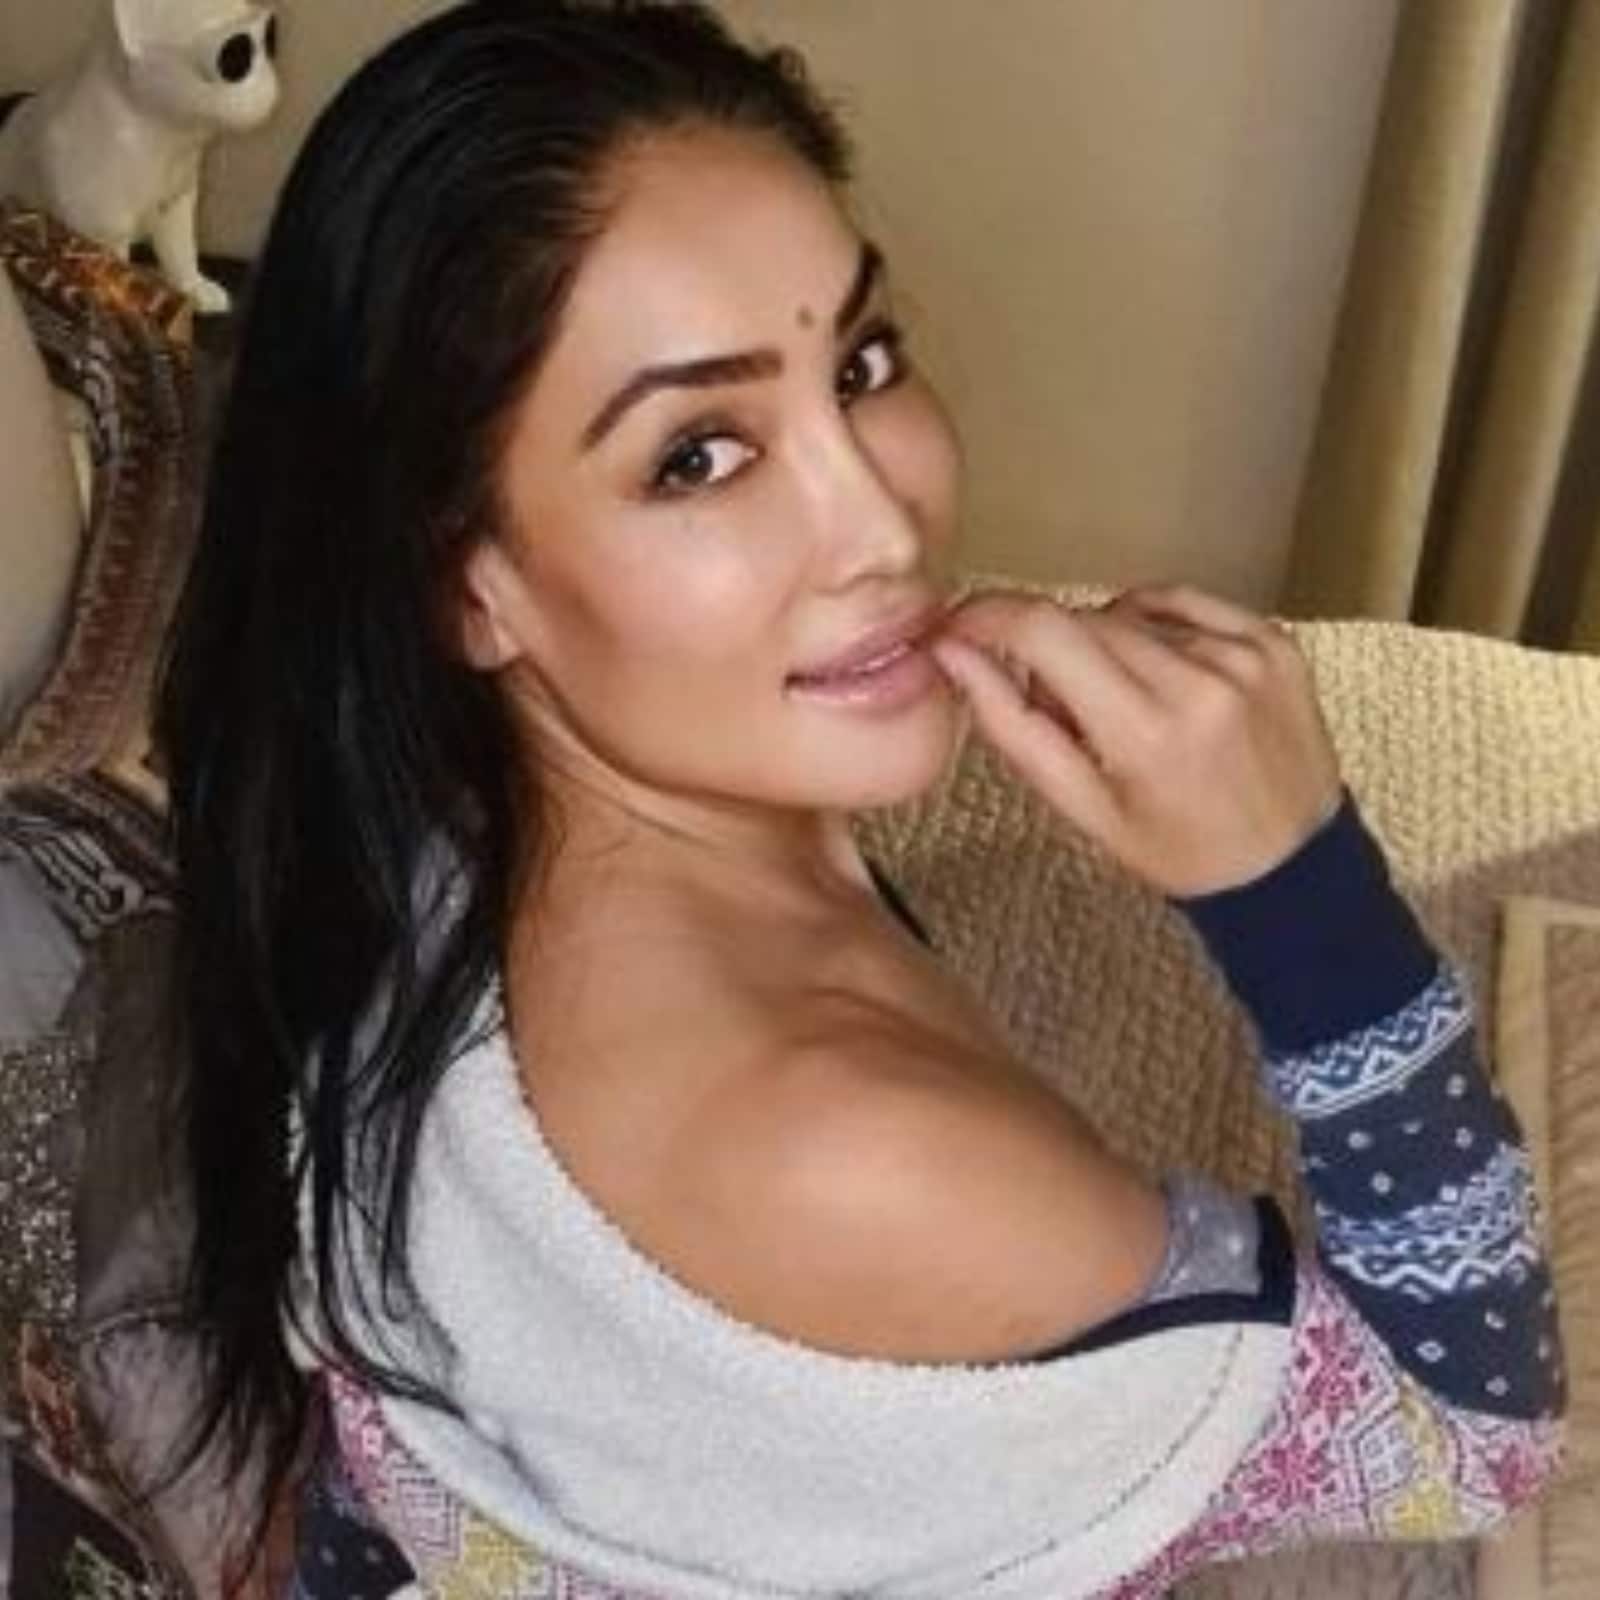 Madhuri Dixit Sexvdo - Sofia Hayat Says Many Bollywood Aspirants Tricked into Doing Porn - News18